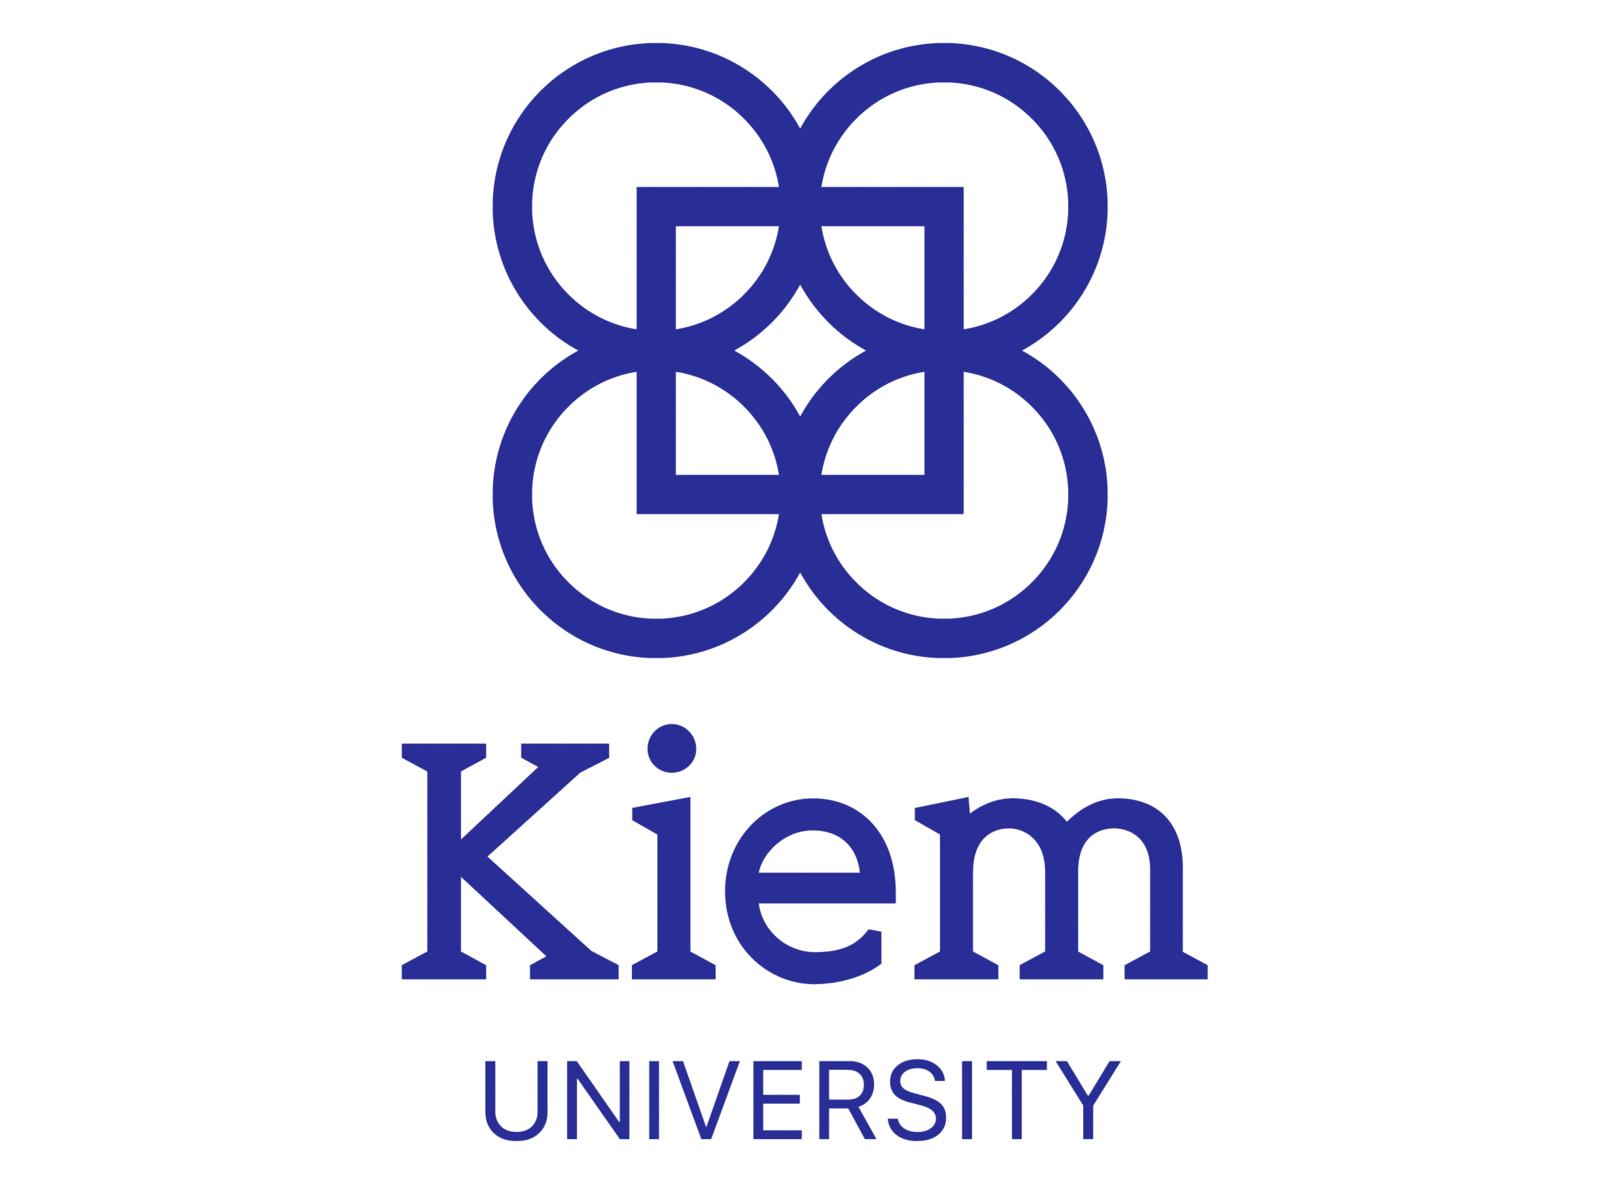 "College/University" logo